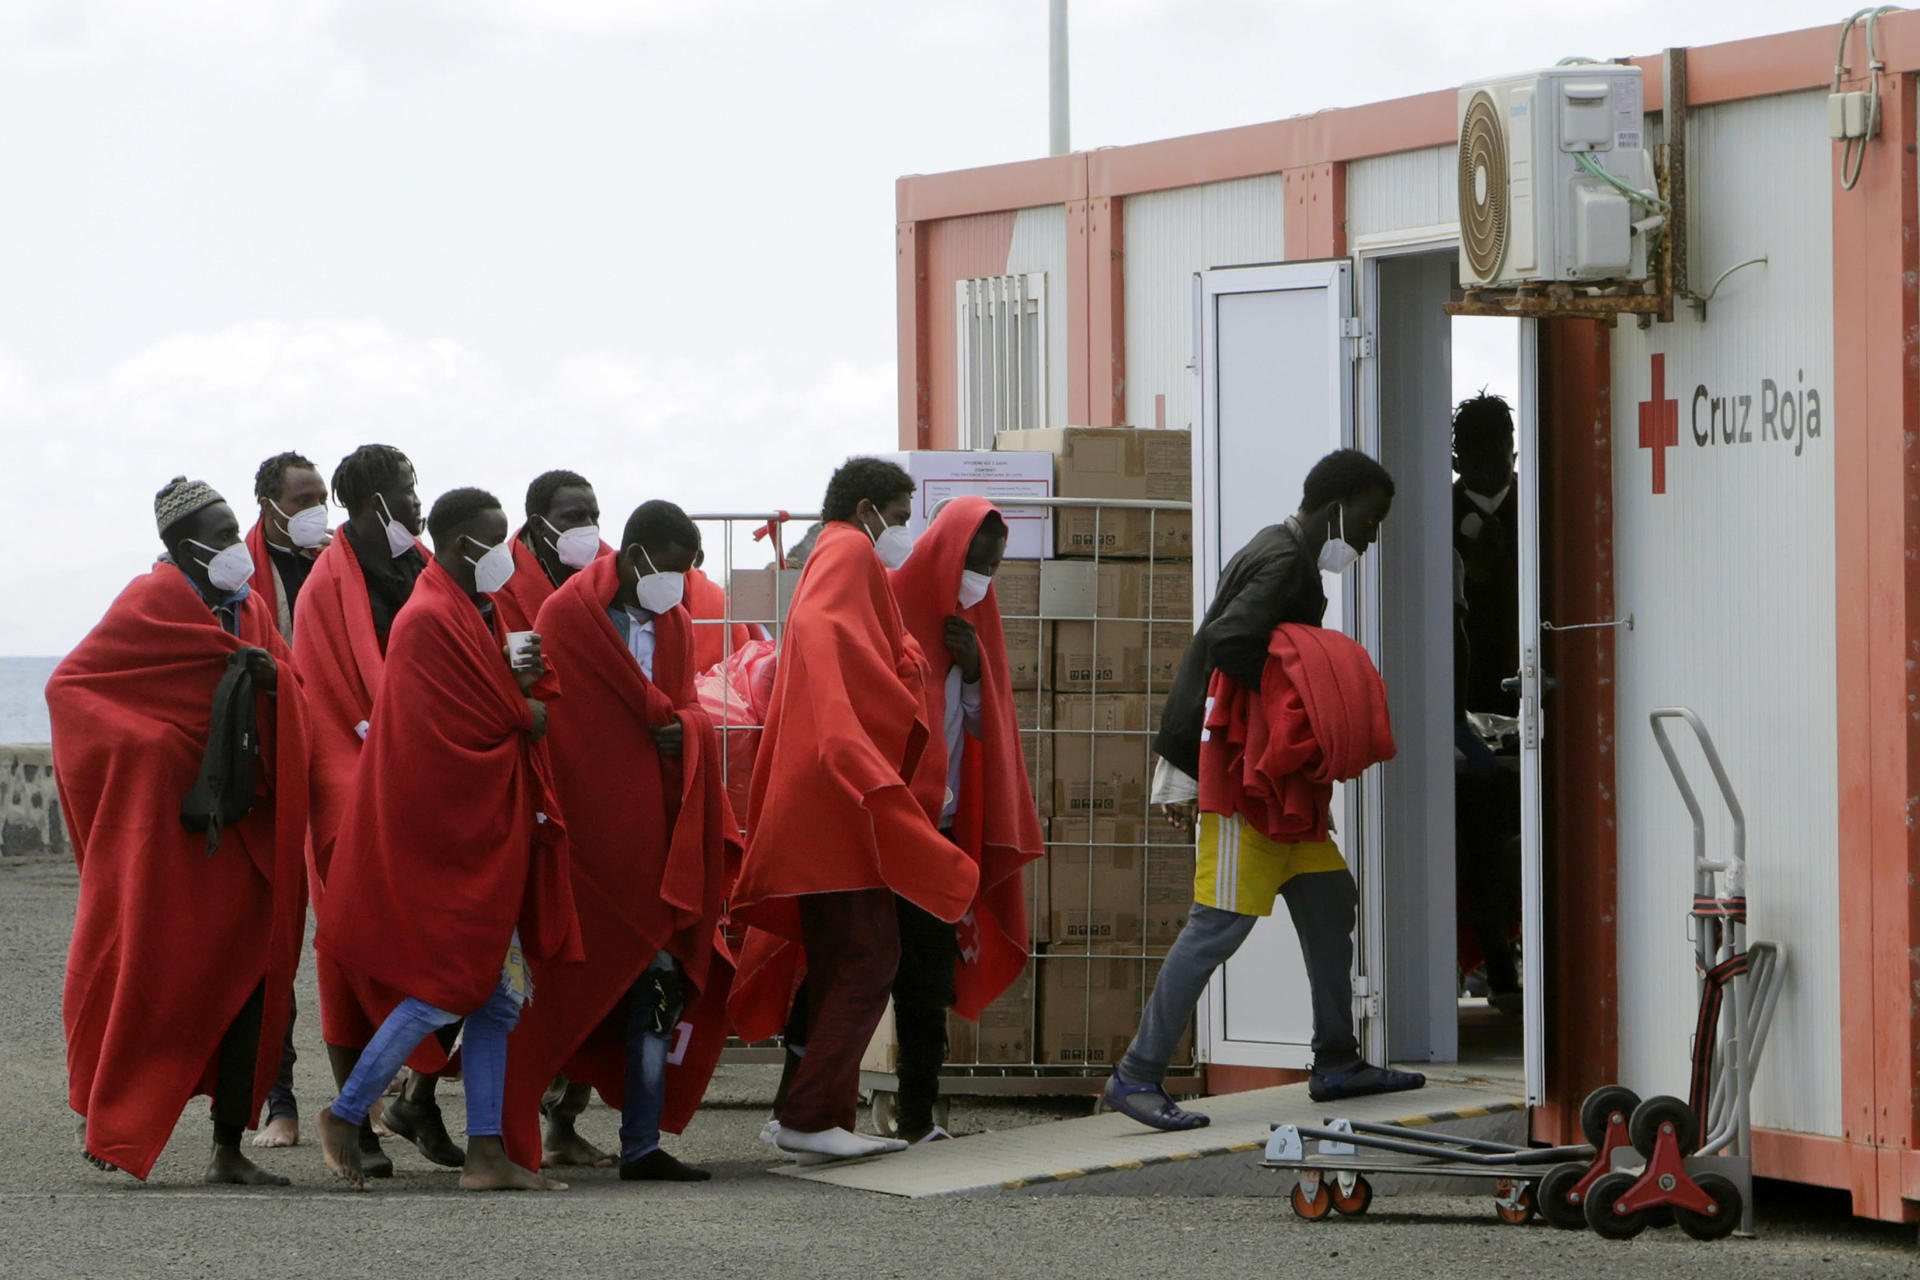 La Salvamar Al Nair ha rescatado hoy sábado a 52 personas de origen subsahariano, entre ellas 5 mujeres, cuando viajaban en una embarcación al este de la isla de Lanzarote. Todos han sido trasladados al muelle de La Cebolla en aparente buen estado de salud. EFE/ Adriel Perdomo